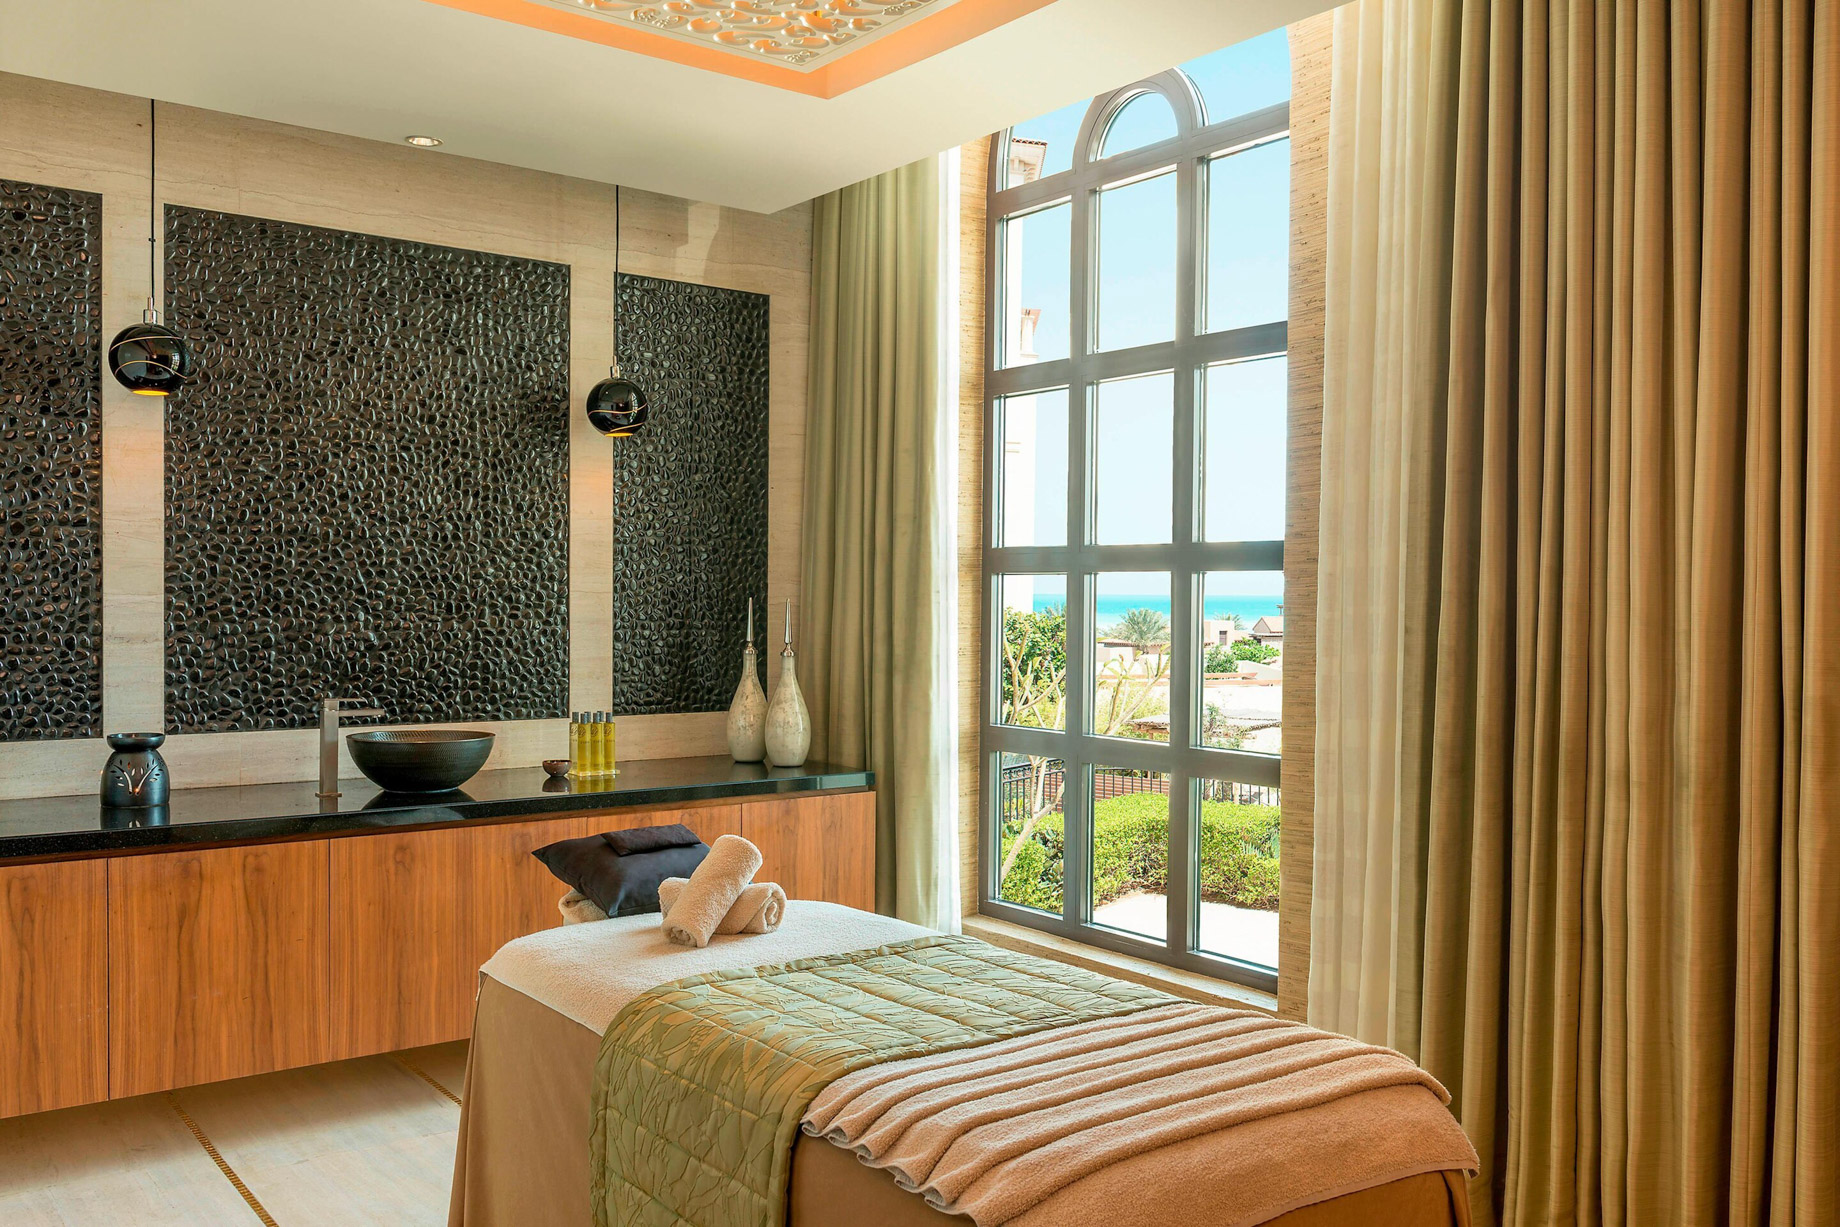 The St. Regis Saadiyat Island Resort - Abu Dhabi, UAE - Iridium Spa Treatment Room